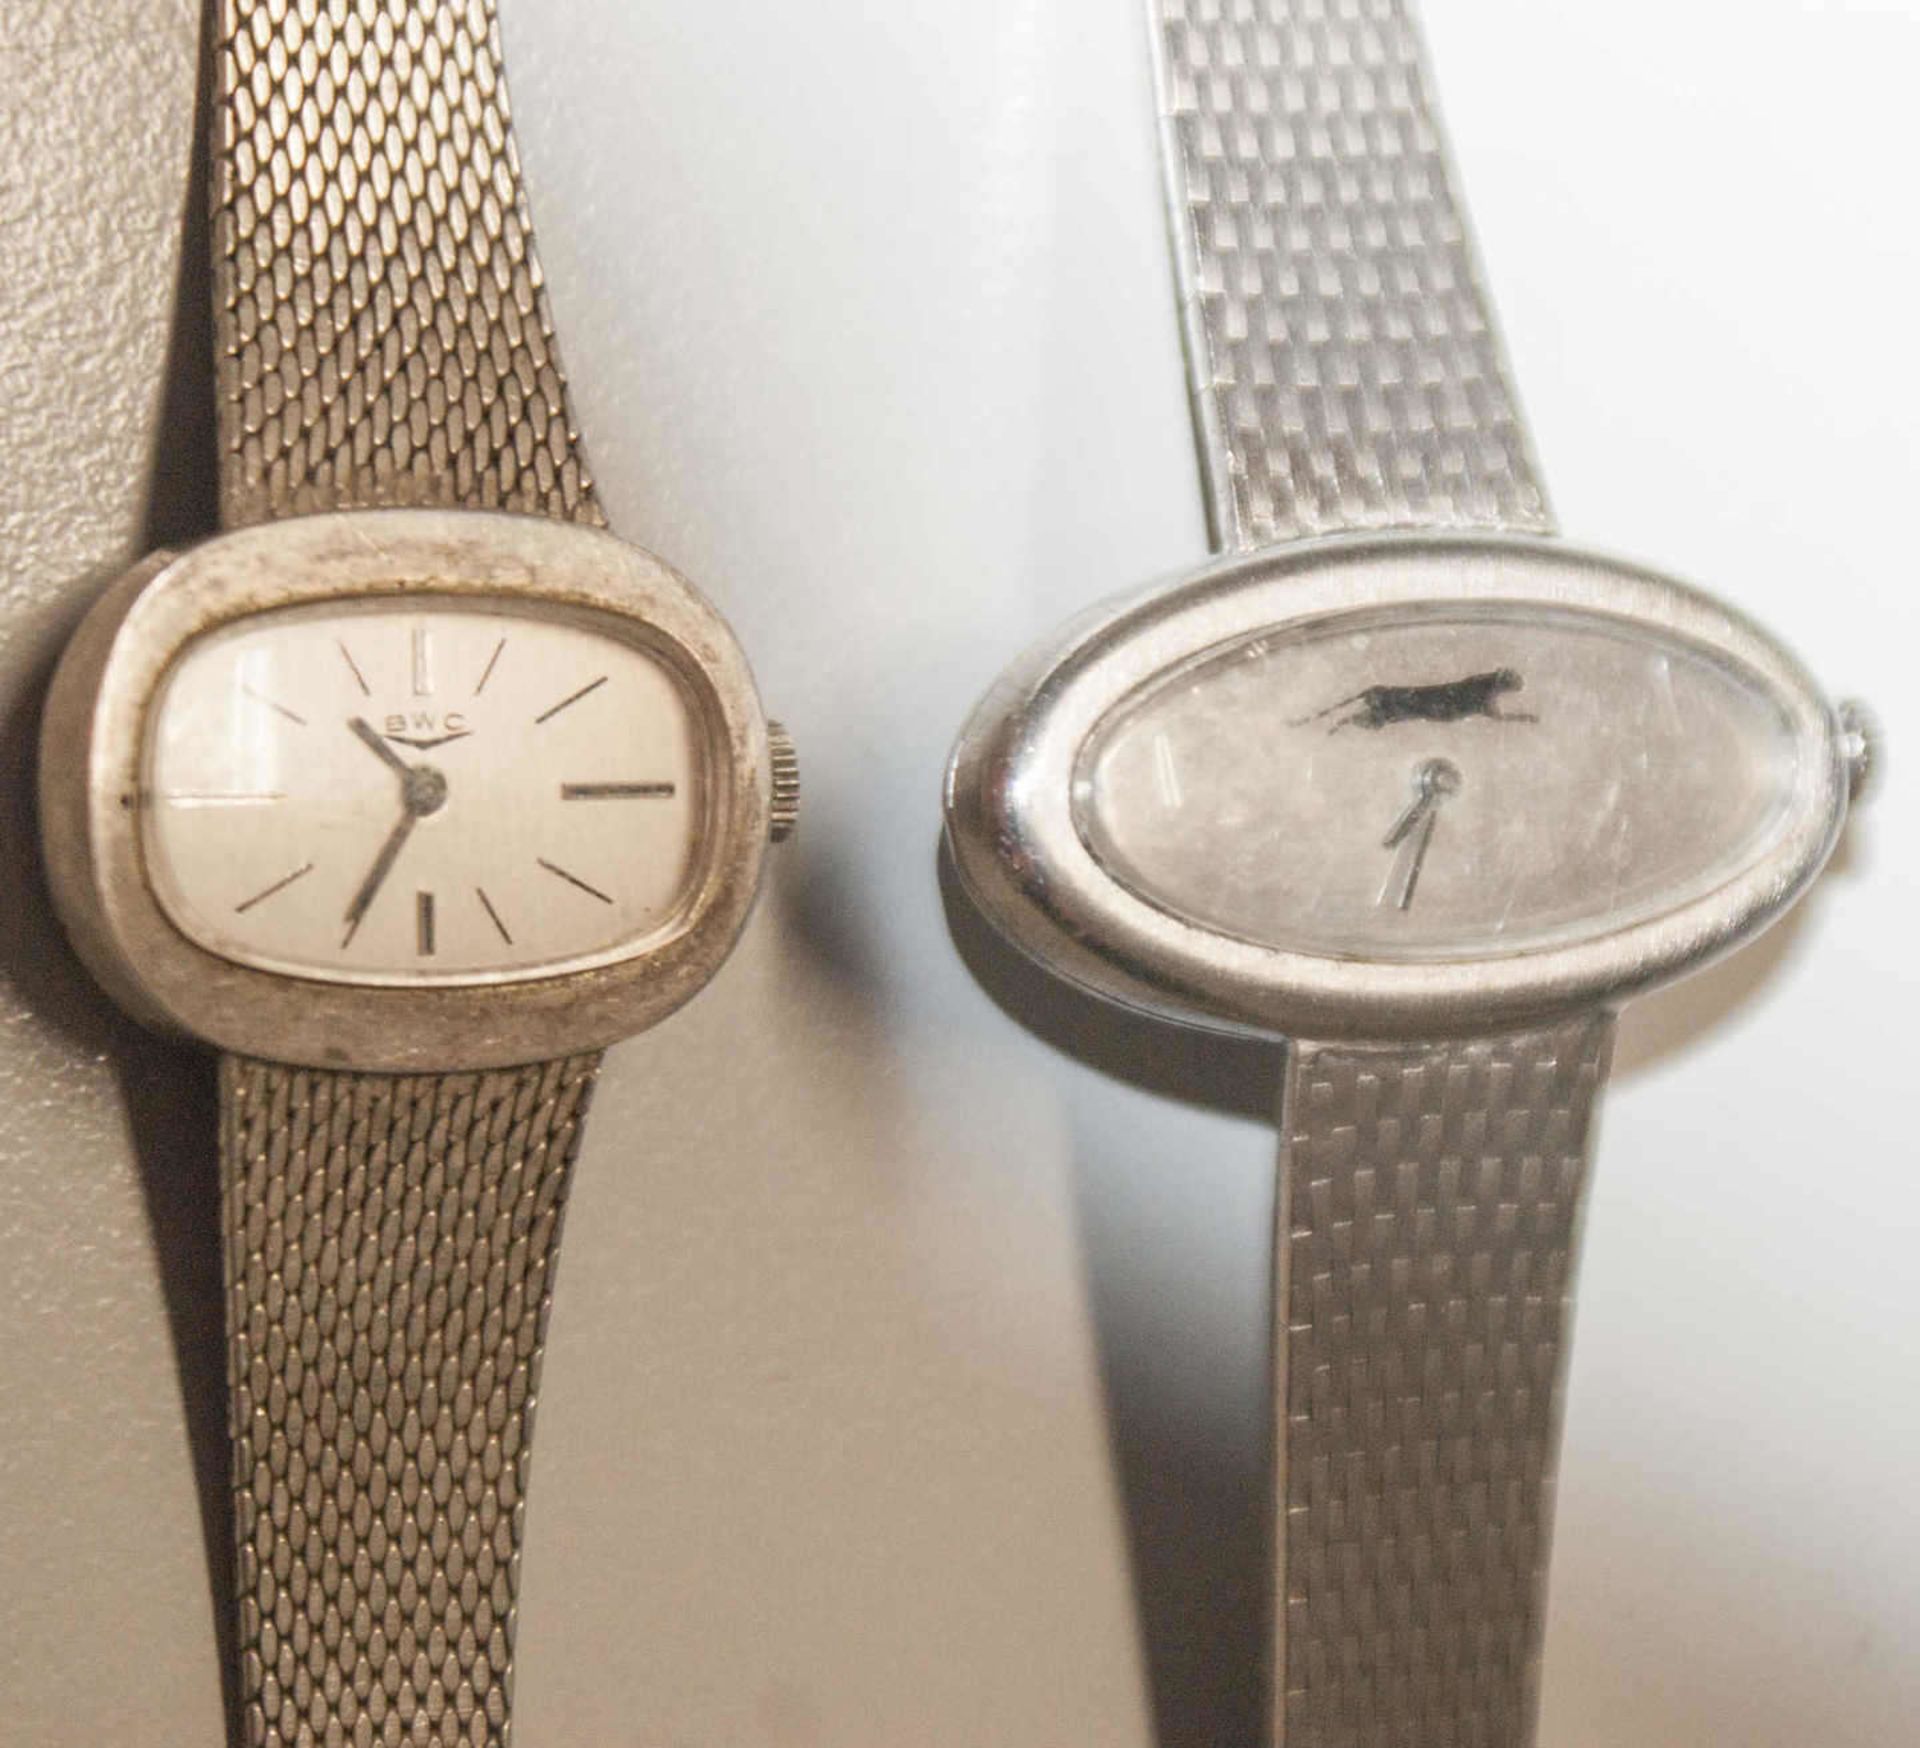 2 Damenarmbanduhren, beide mech. und silber. 1 Uhr läuft. Gewicht ca. 67,5g.2 ladies wristwatches, - Bild 2 aus 2